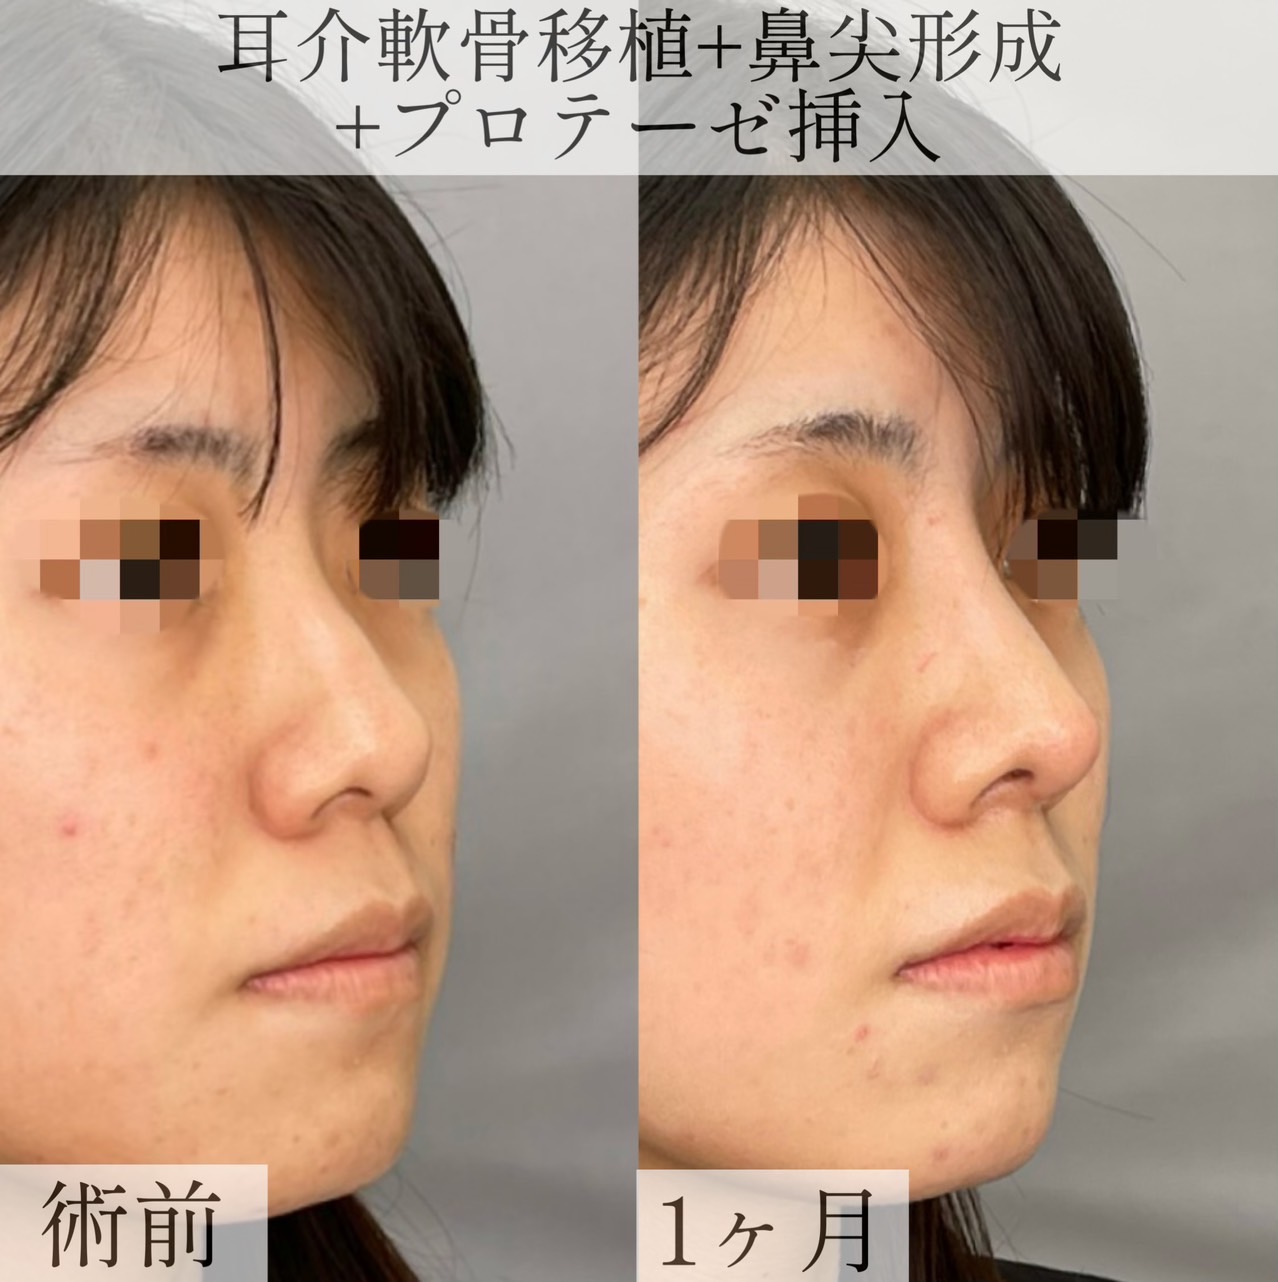 【1ヶ月】耳介軟骨移植+鼻尖形成+プロテーゼ挿入【20代女性】の画像